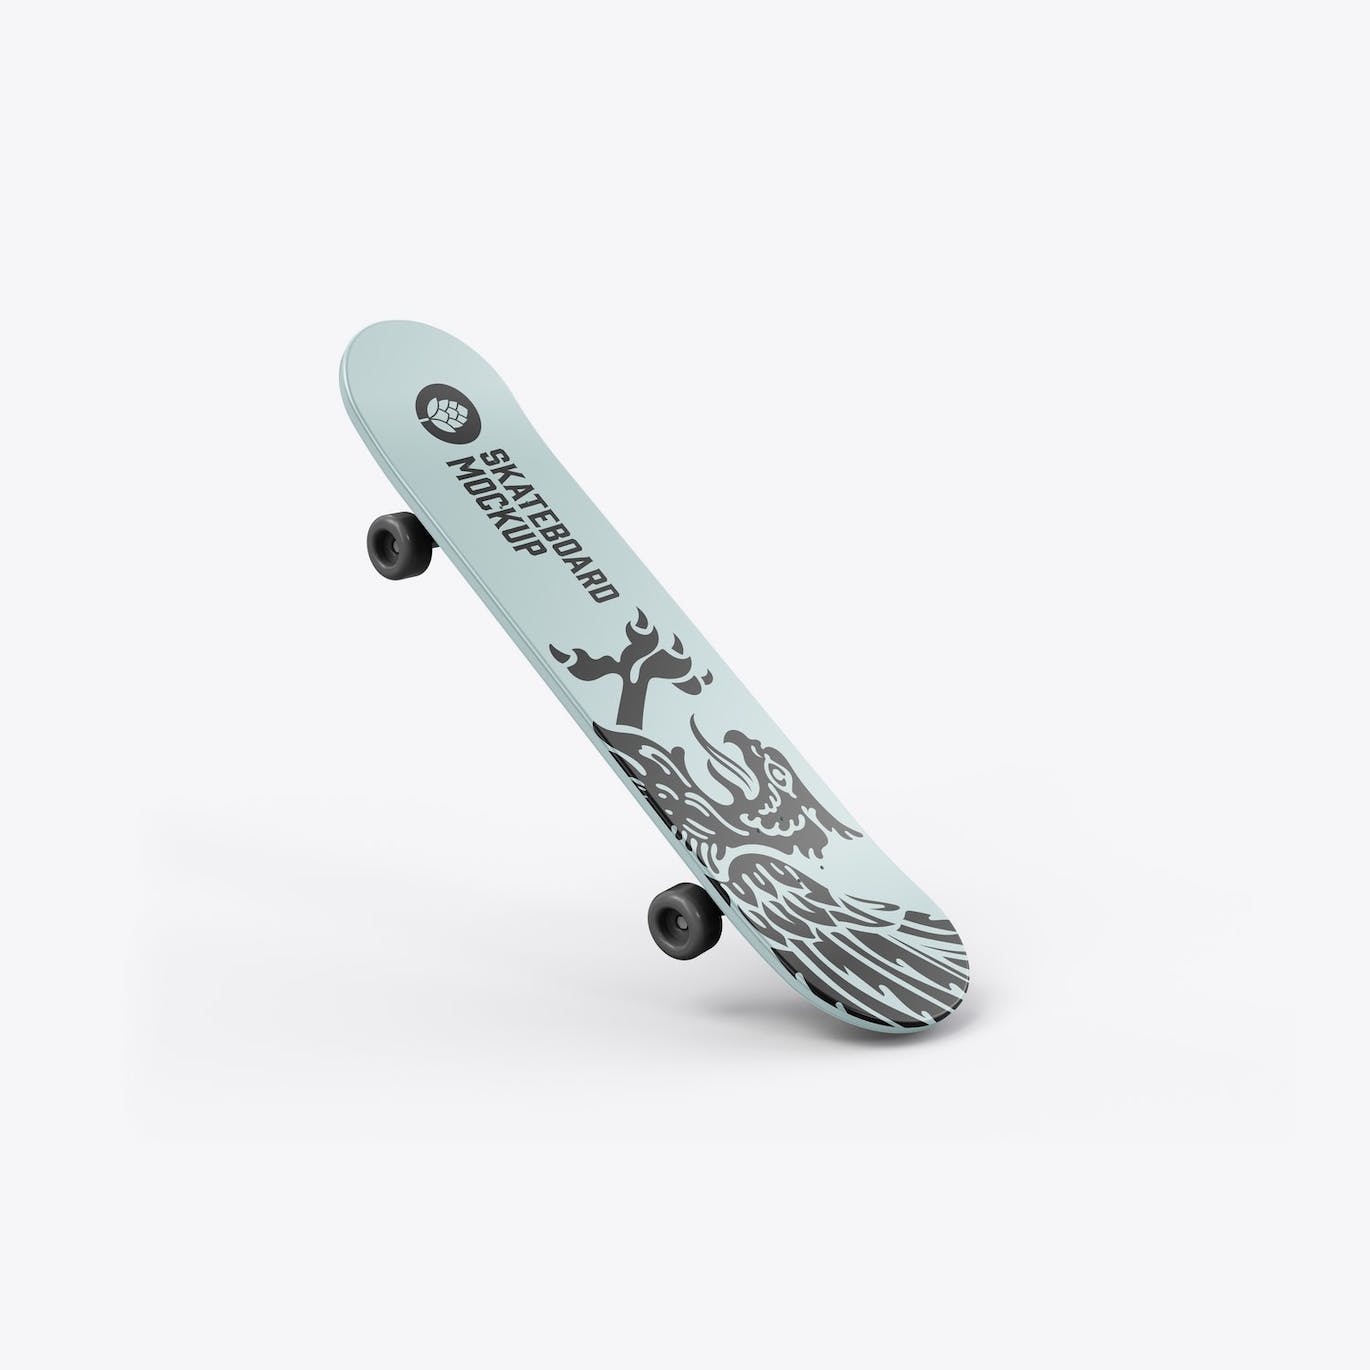 骑行滑板品牌设计样机 Skateboard Mockup 样机素材 第13张